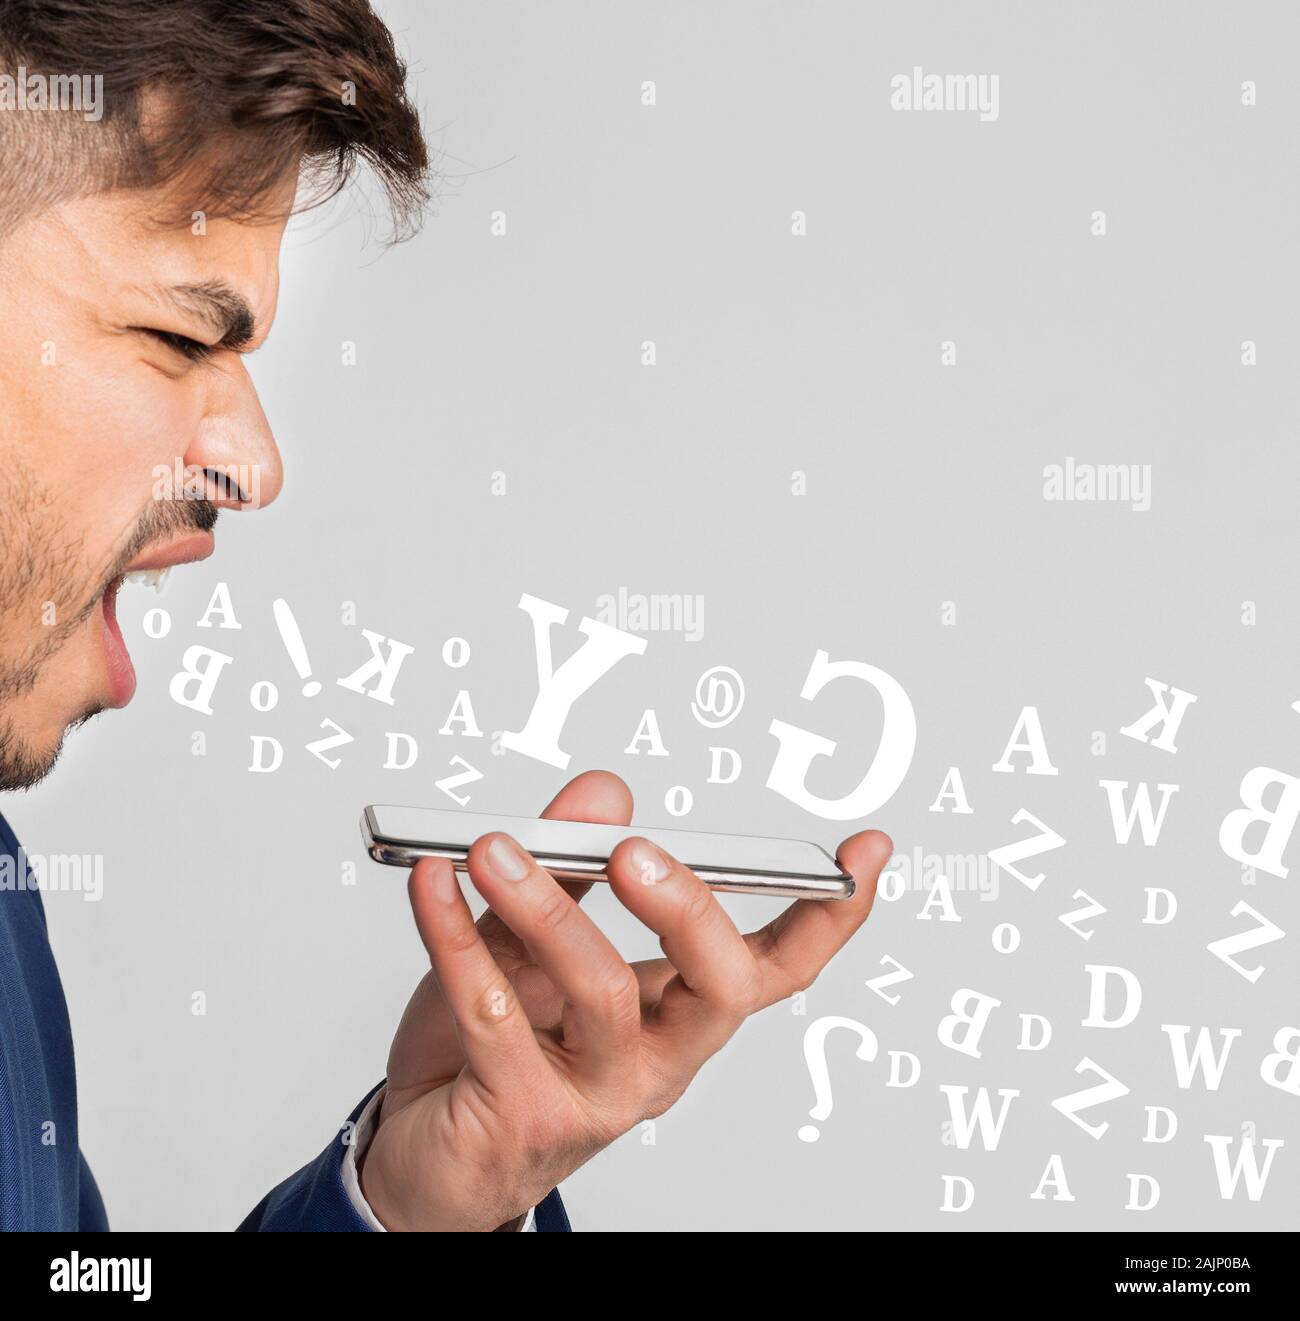 Imprenditore arrabbiato urlando a smartphone, avendo conversazioni stressanti, diverse lettere alfabeto battenti fuori della sua bocca su sfondo chiaro Foto Stock